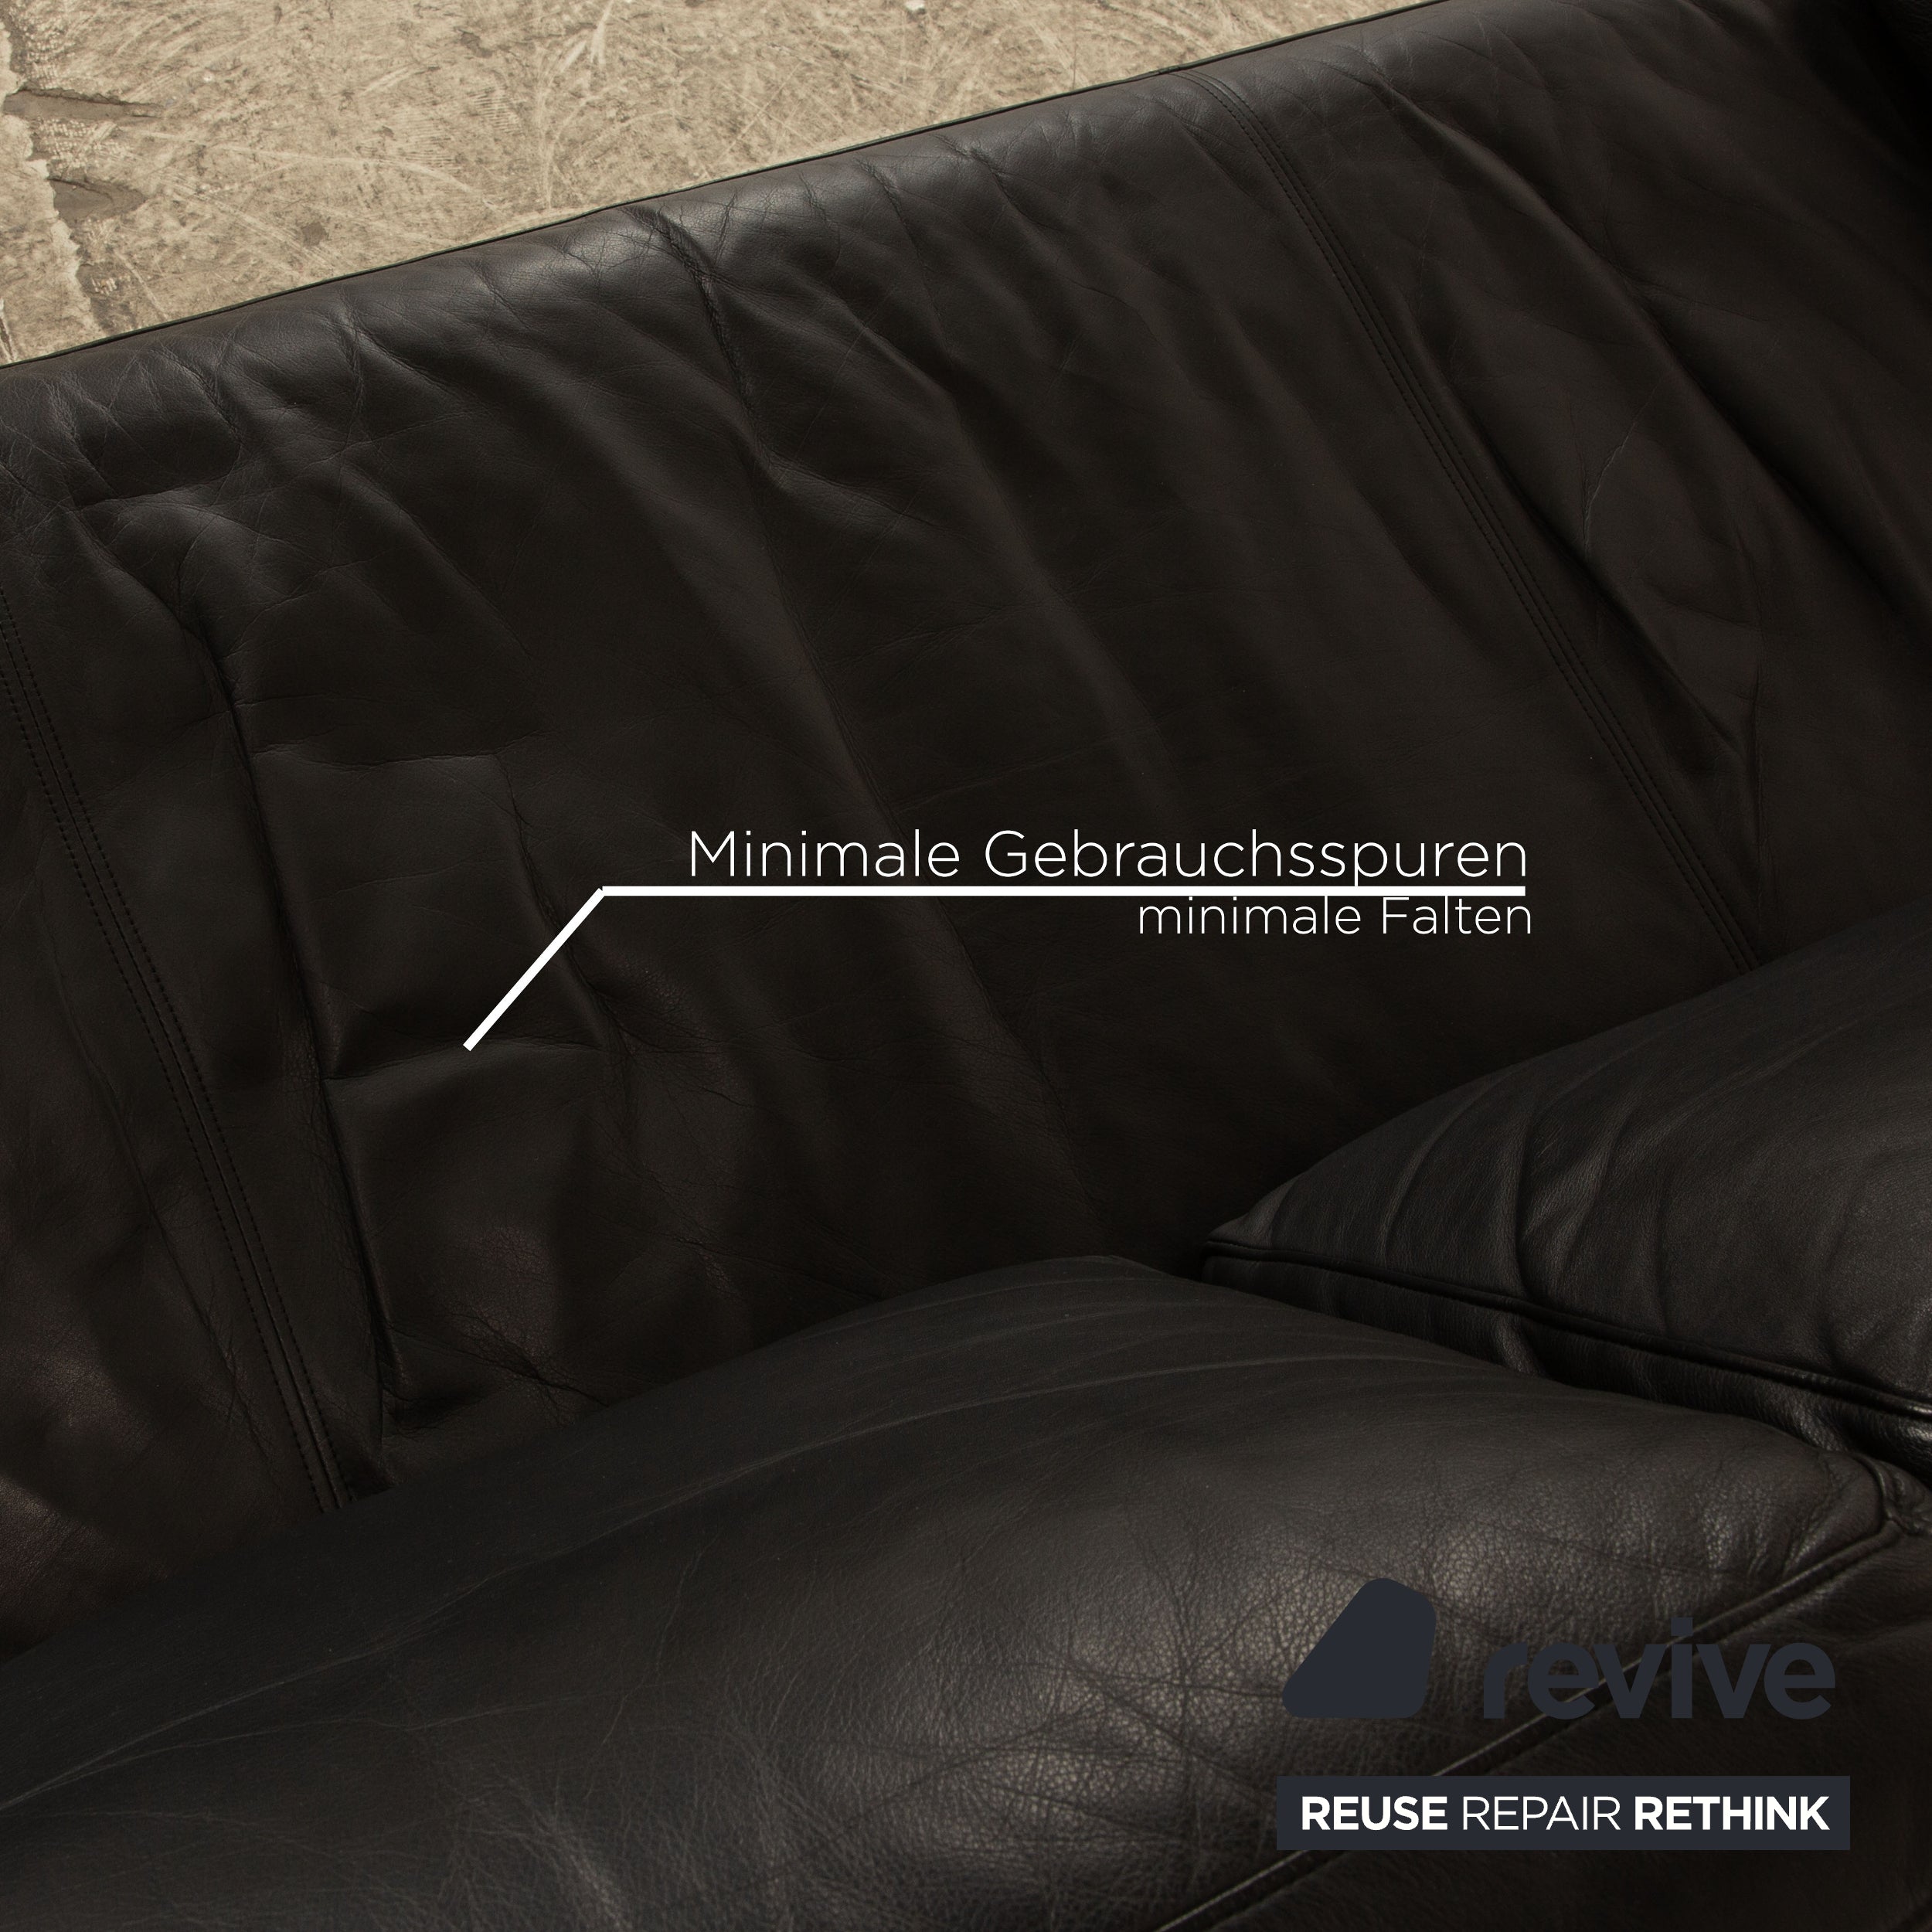 Rolf Benz 6600 Leder Zweisitzer Schwarz Sofa Couch